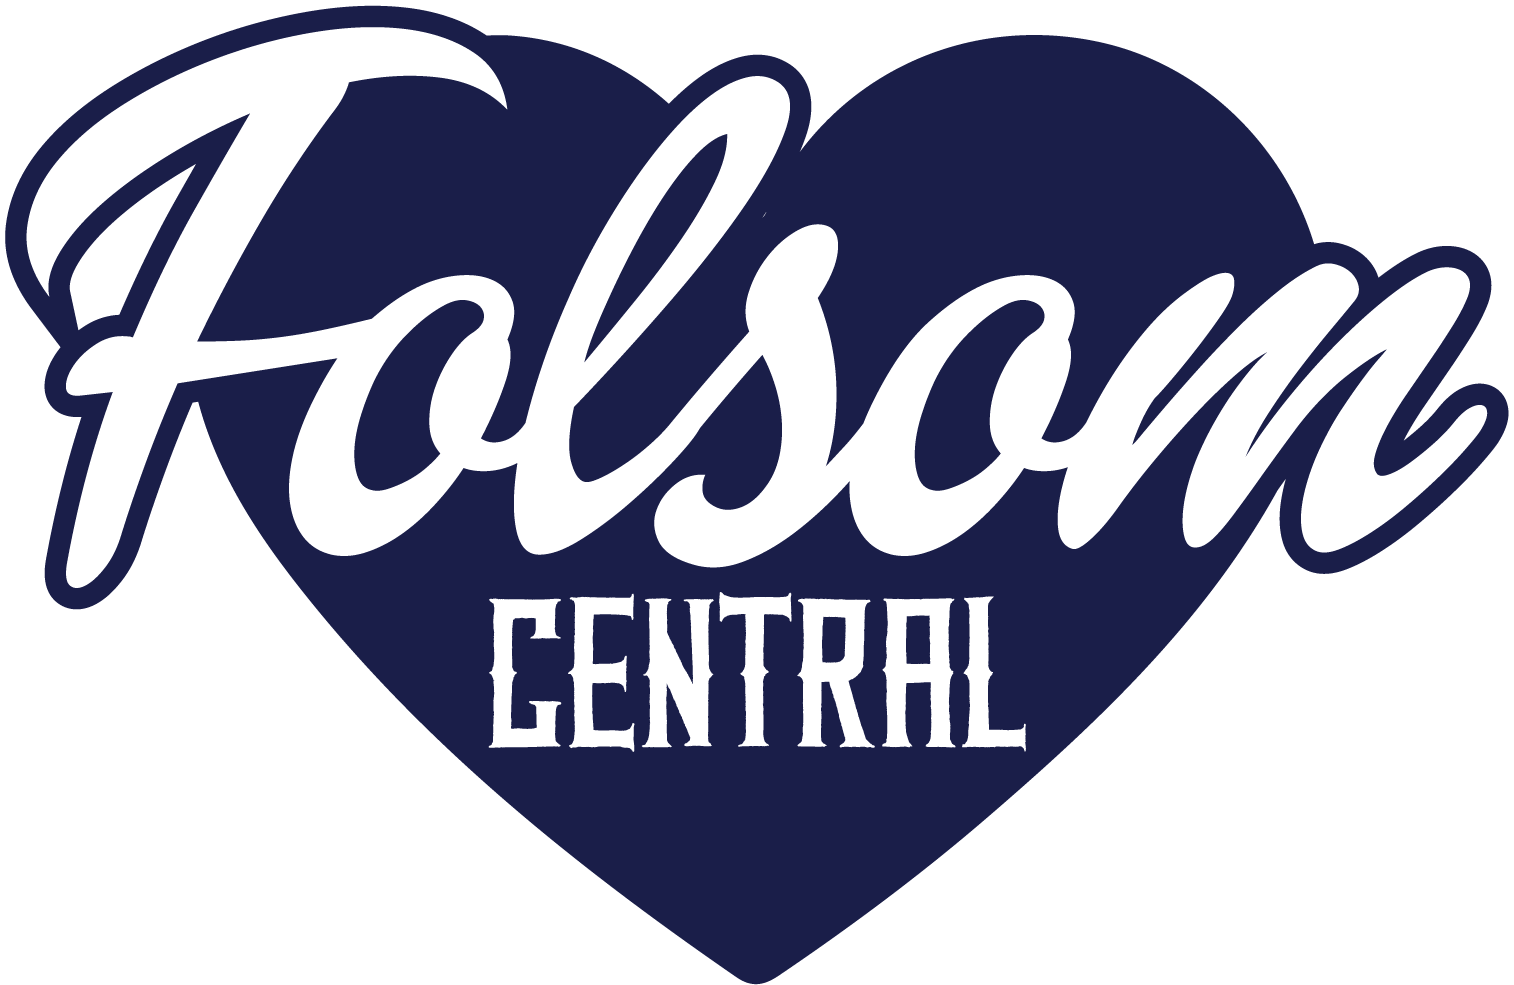 folsom central logo